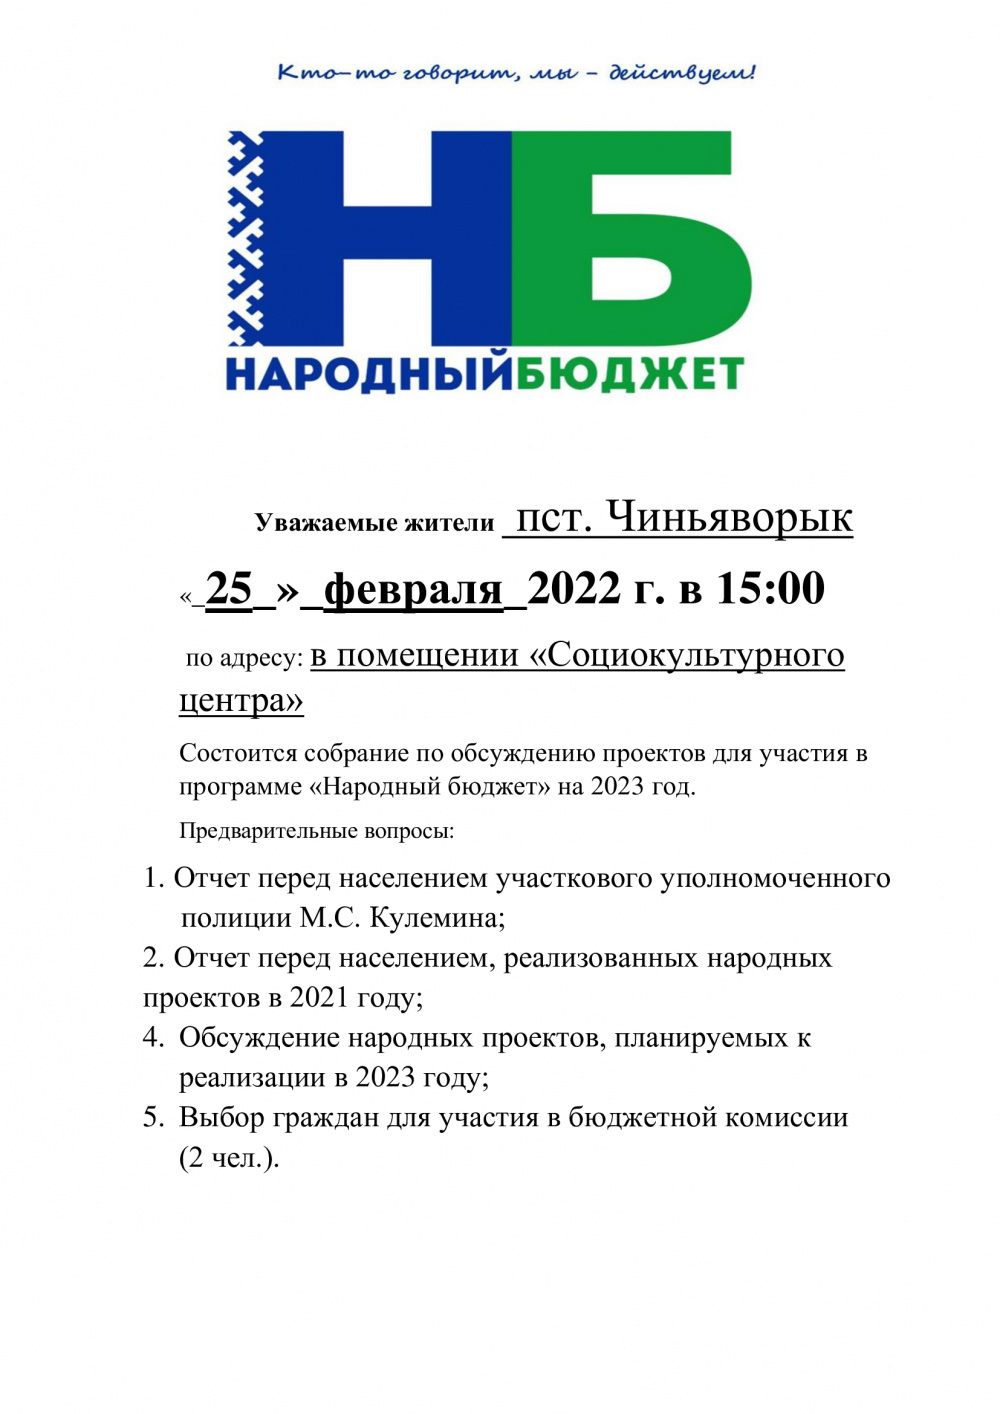 Уважаемые жители п. Чиньяворык, 25 февраля 2022 года в 15:00, в помещении «Социокультурного центра» , состоится собрание по обсуждению проектов для участия в программе "Народный Бюджет" на 2023 год!